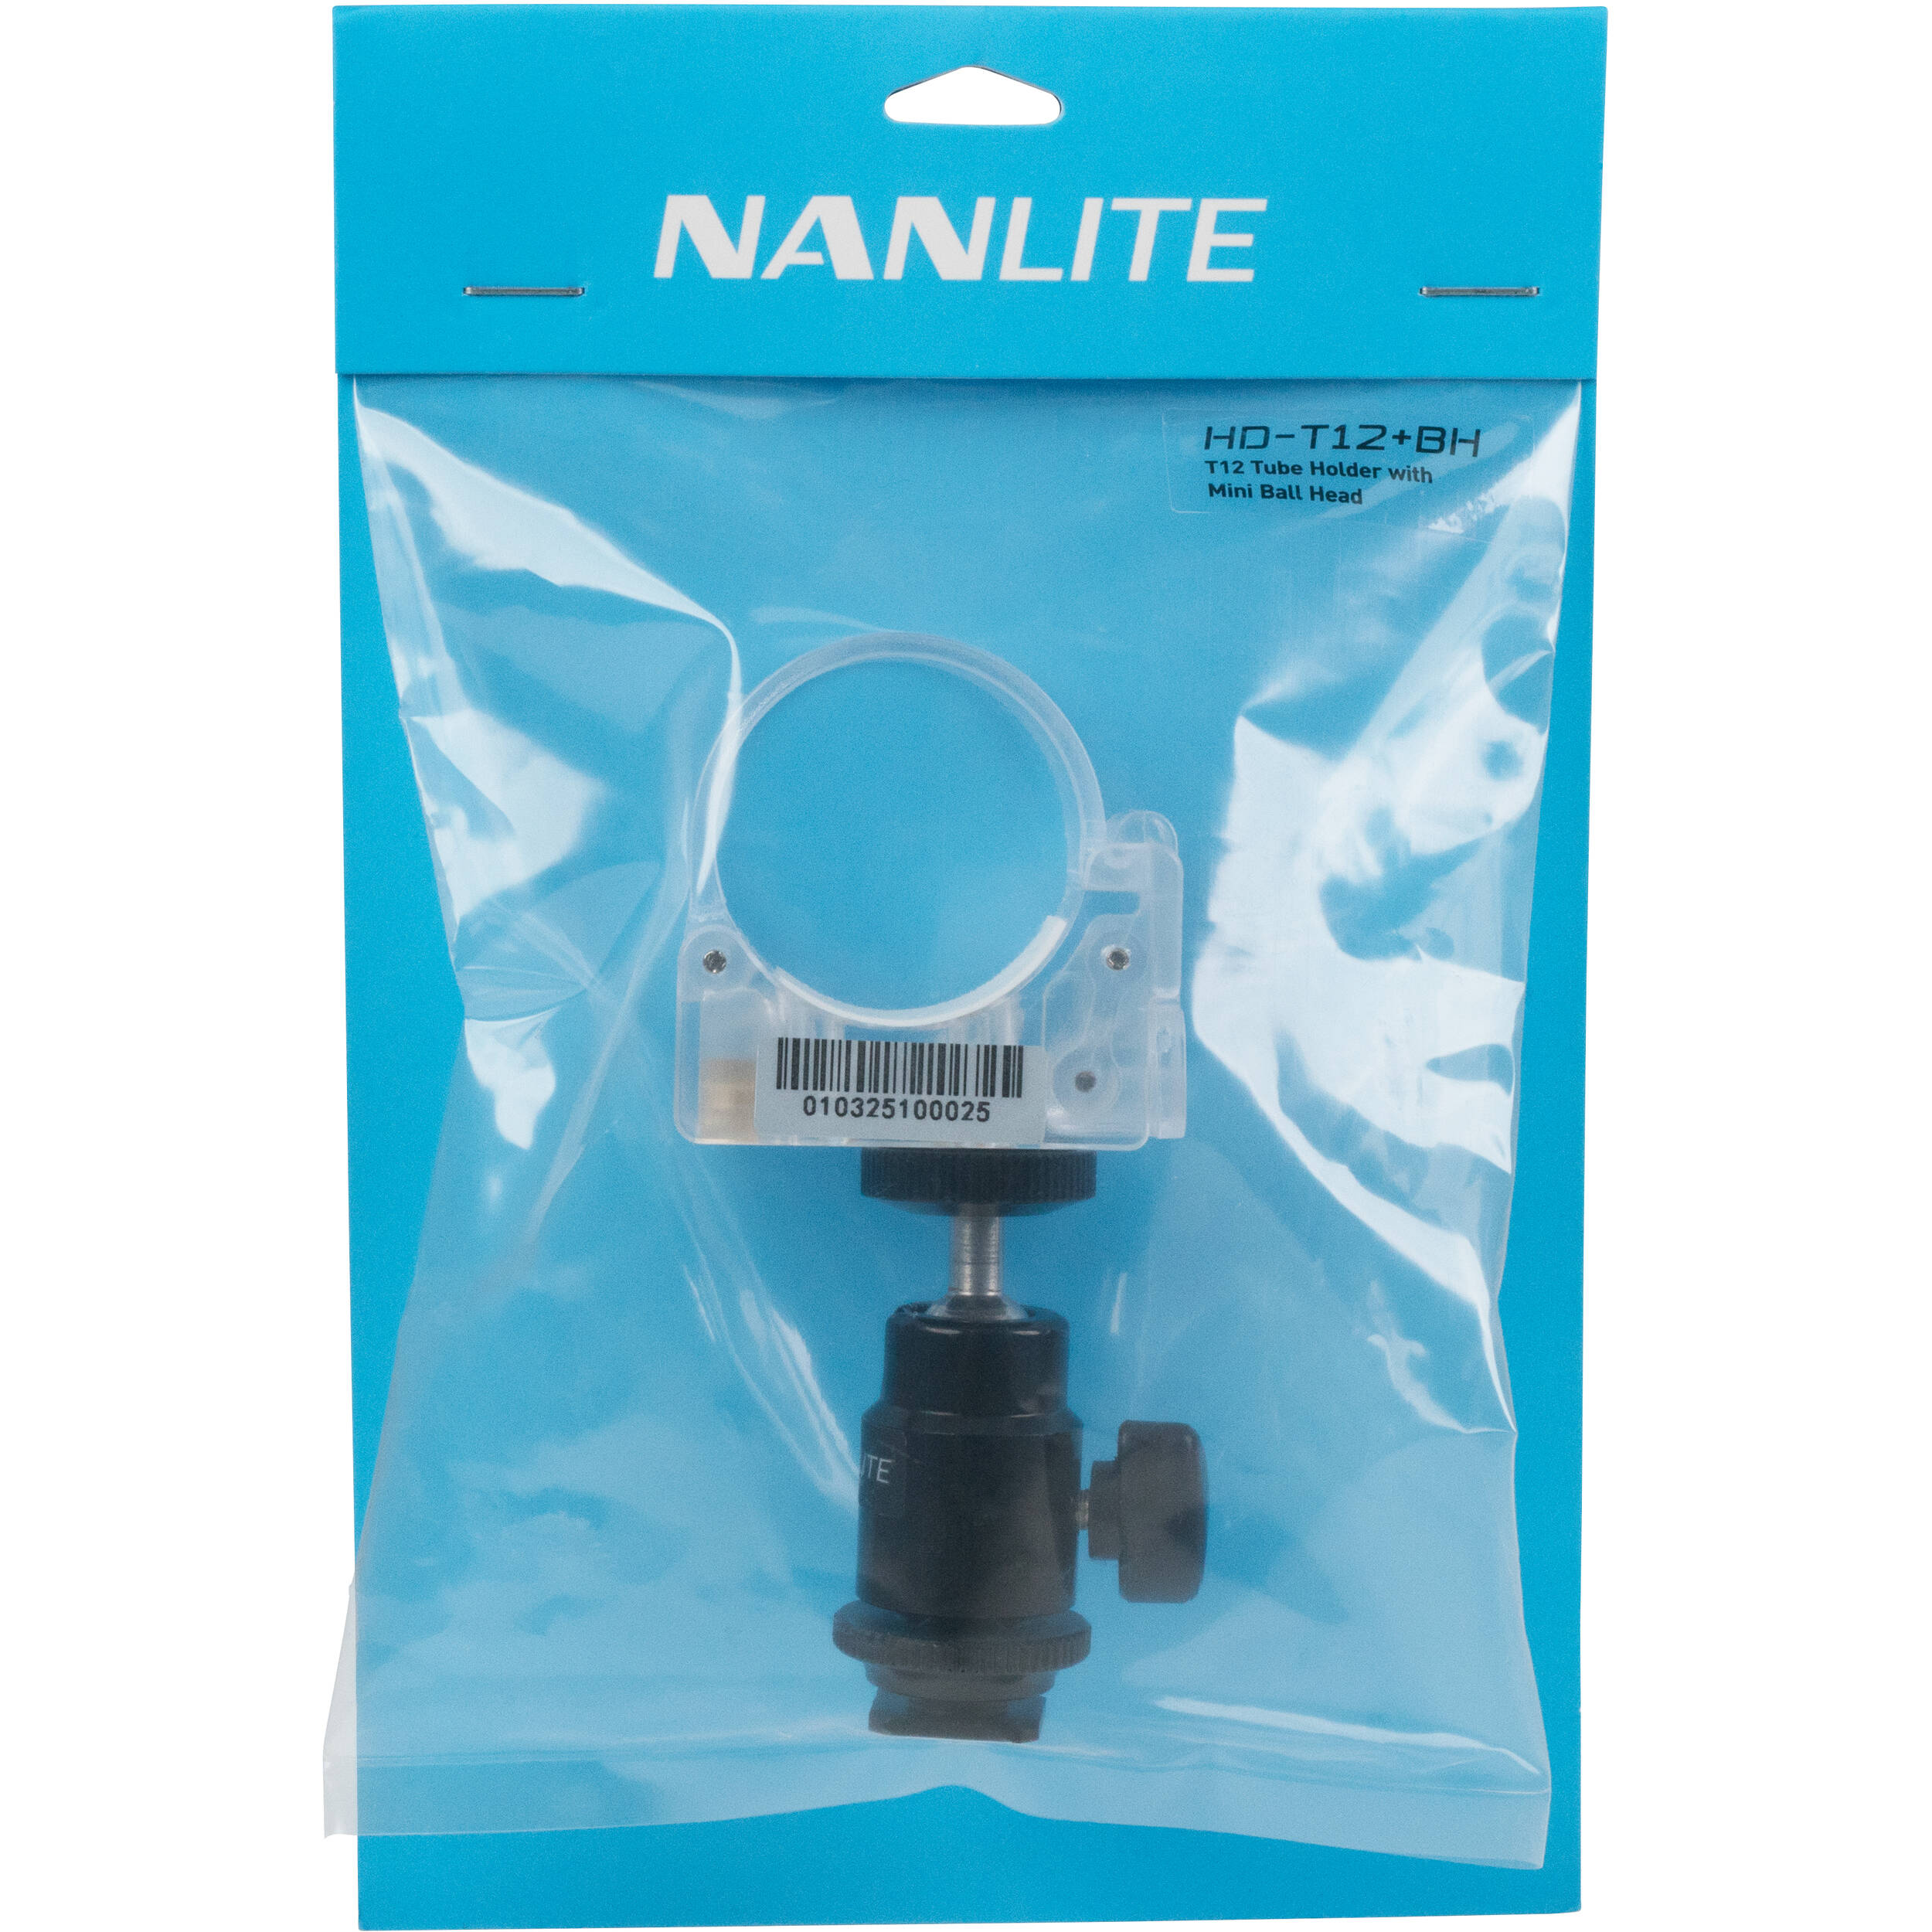 Nanlite Pavotube Clip en polycarbonate transparent et tête de mini-balle avec adaptateur de chaussures chaud